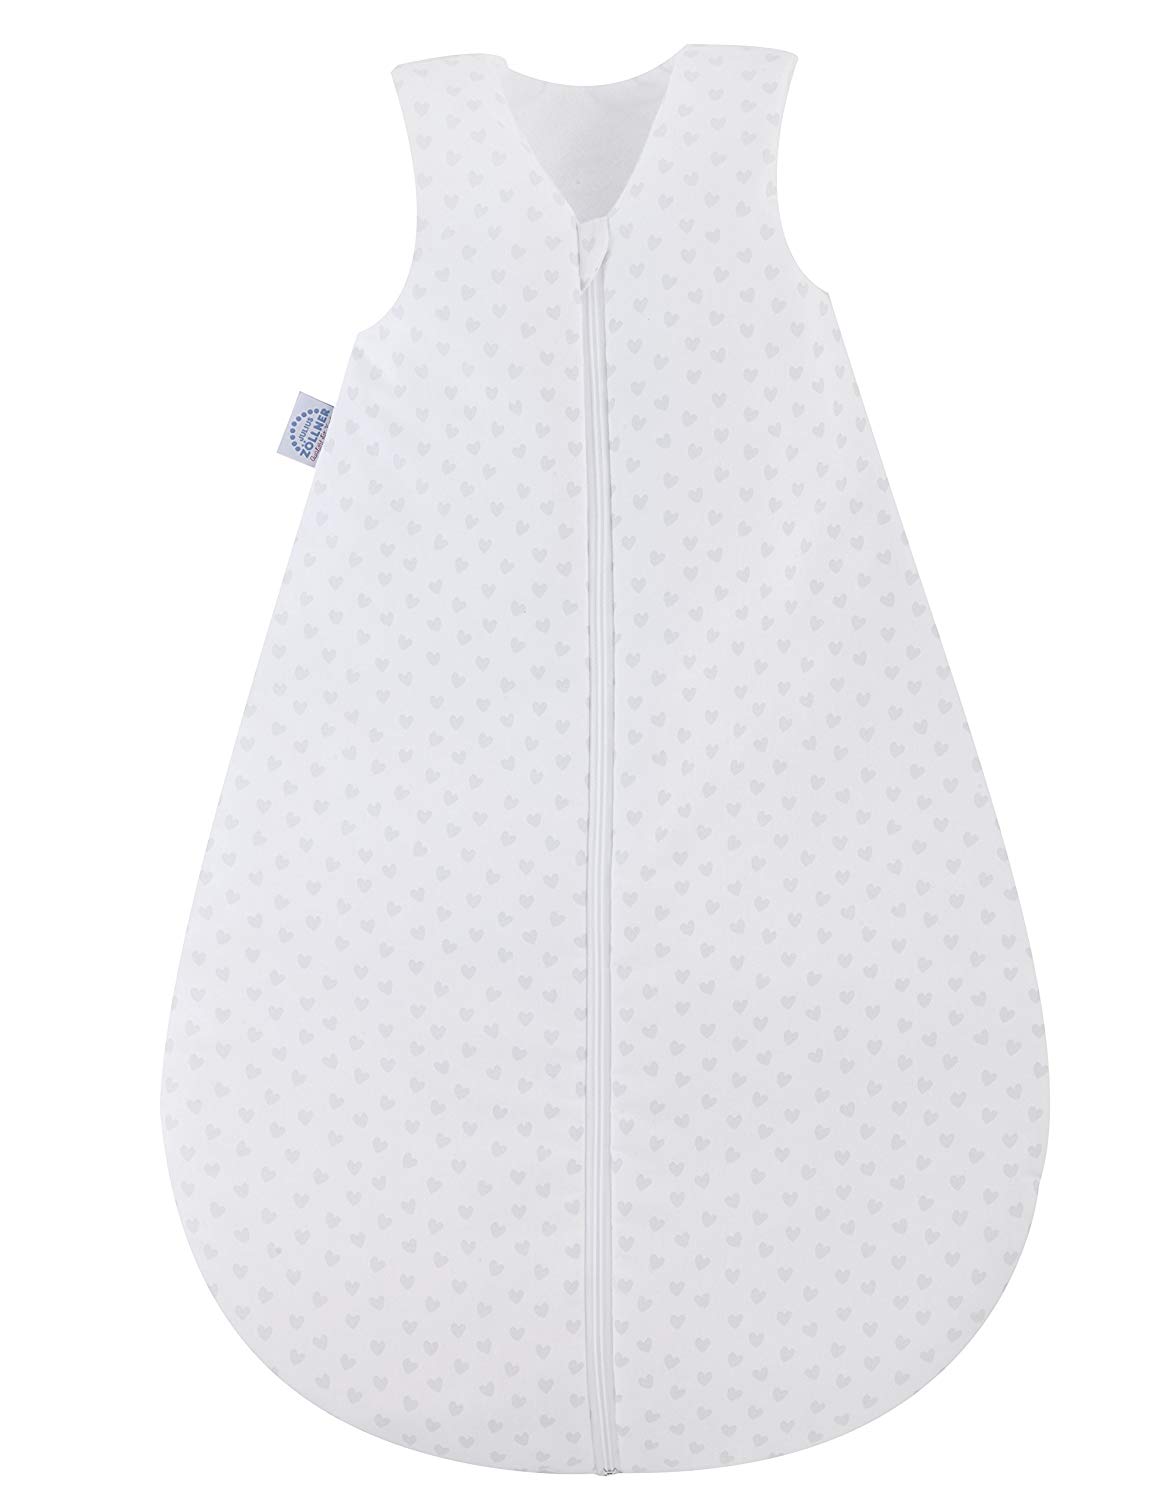 Julius Zöllner Baby’s Sleeping Bag, Summer or Year-Round Sleeping Bag, Standard 100 by Oeko-Tex, Made in Germany, in Various Designs and Sizes